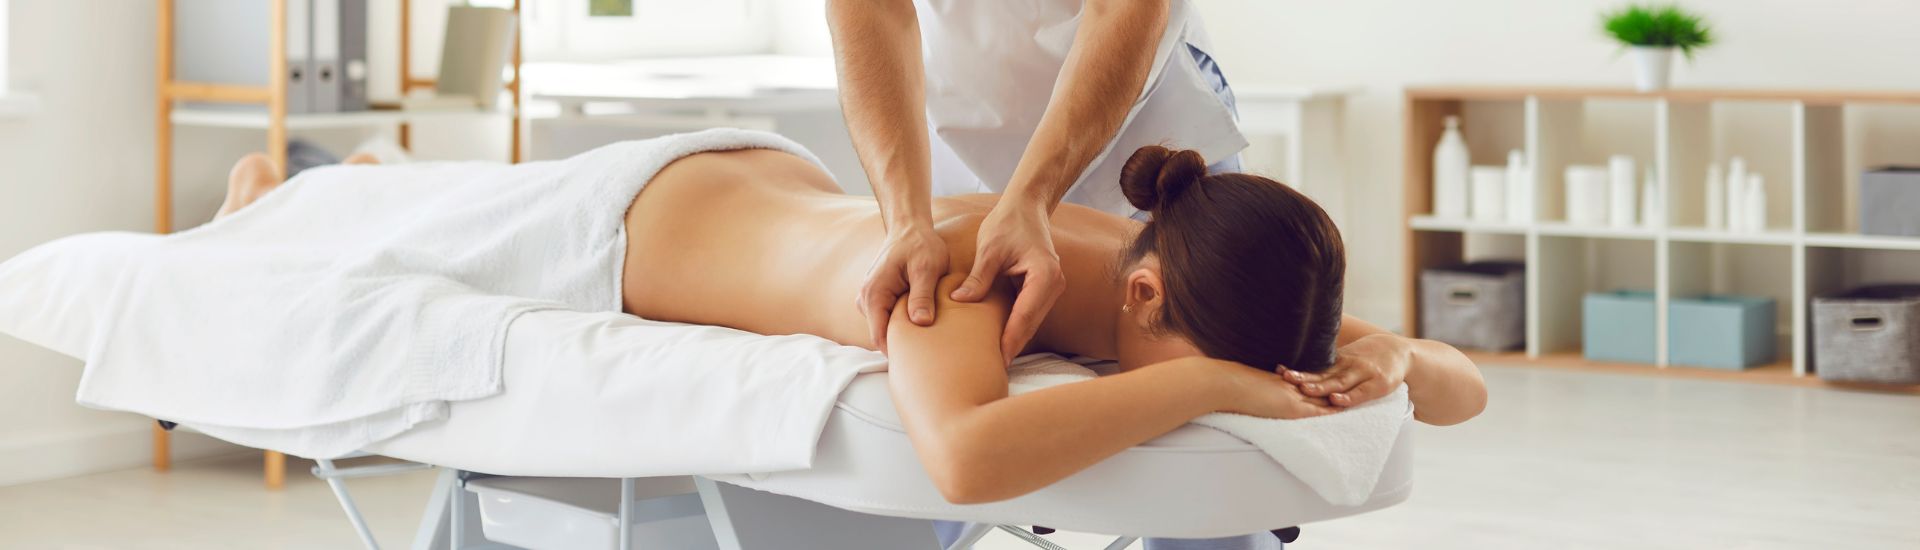 Massaggio Terapeutico A-Medical Group Arce